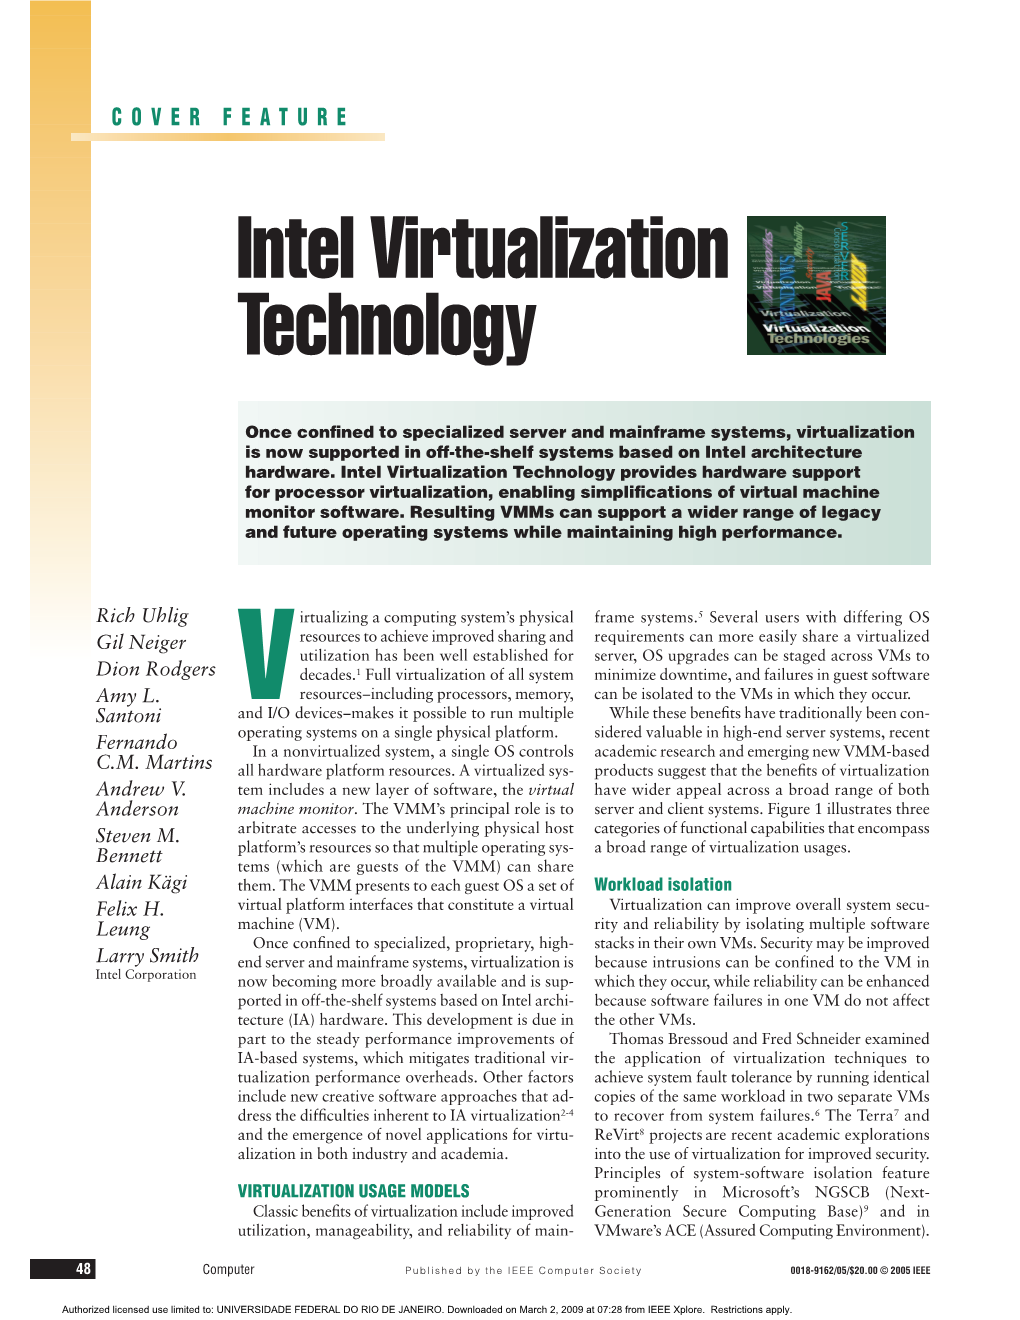 Intel Virtualization Technology